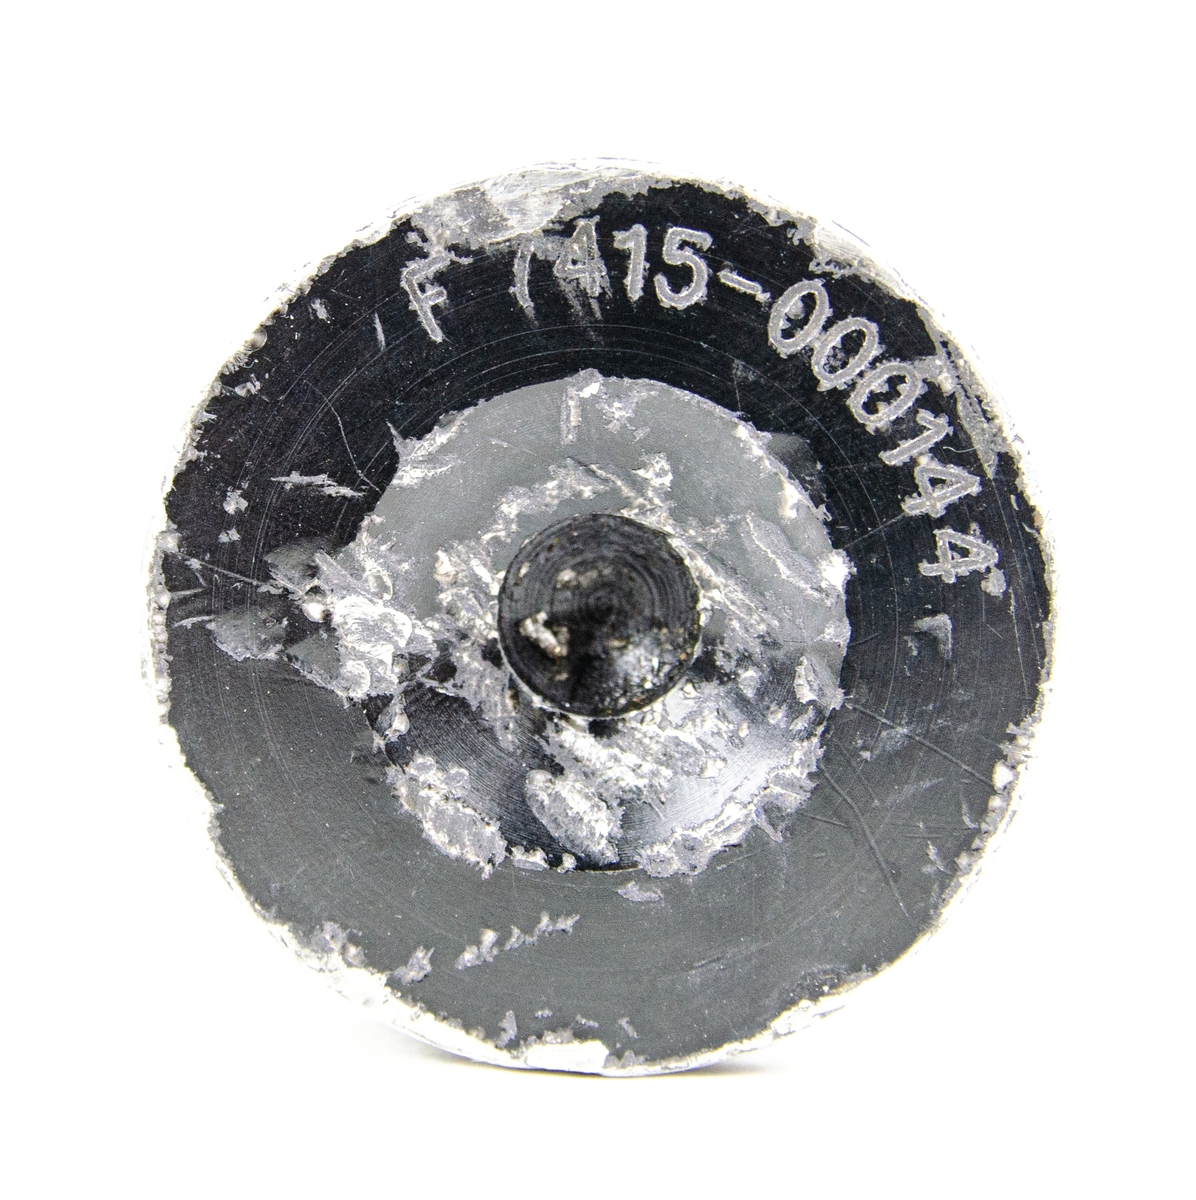 Patron m/75 Blind, 30 mm. Patronen är svartfärgad med en blå markering längs mitten av föremålet.